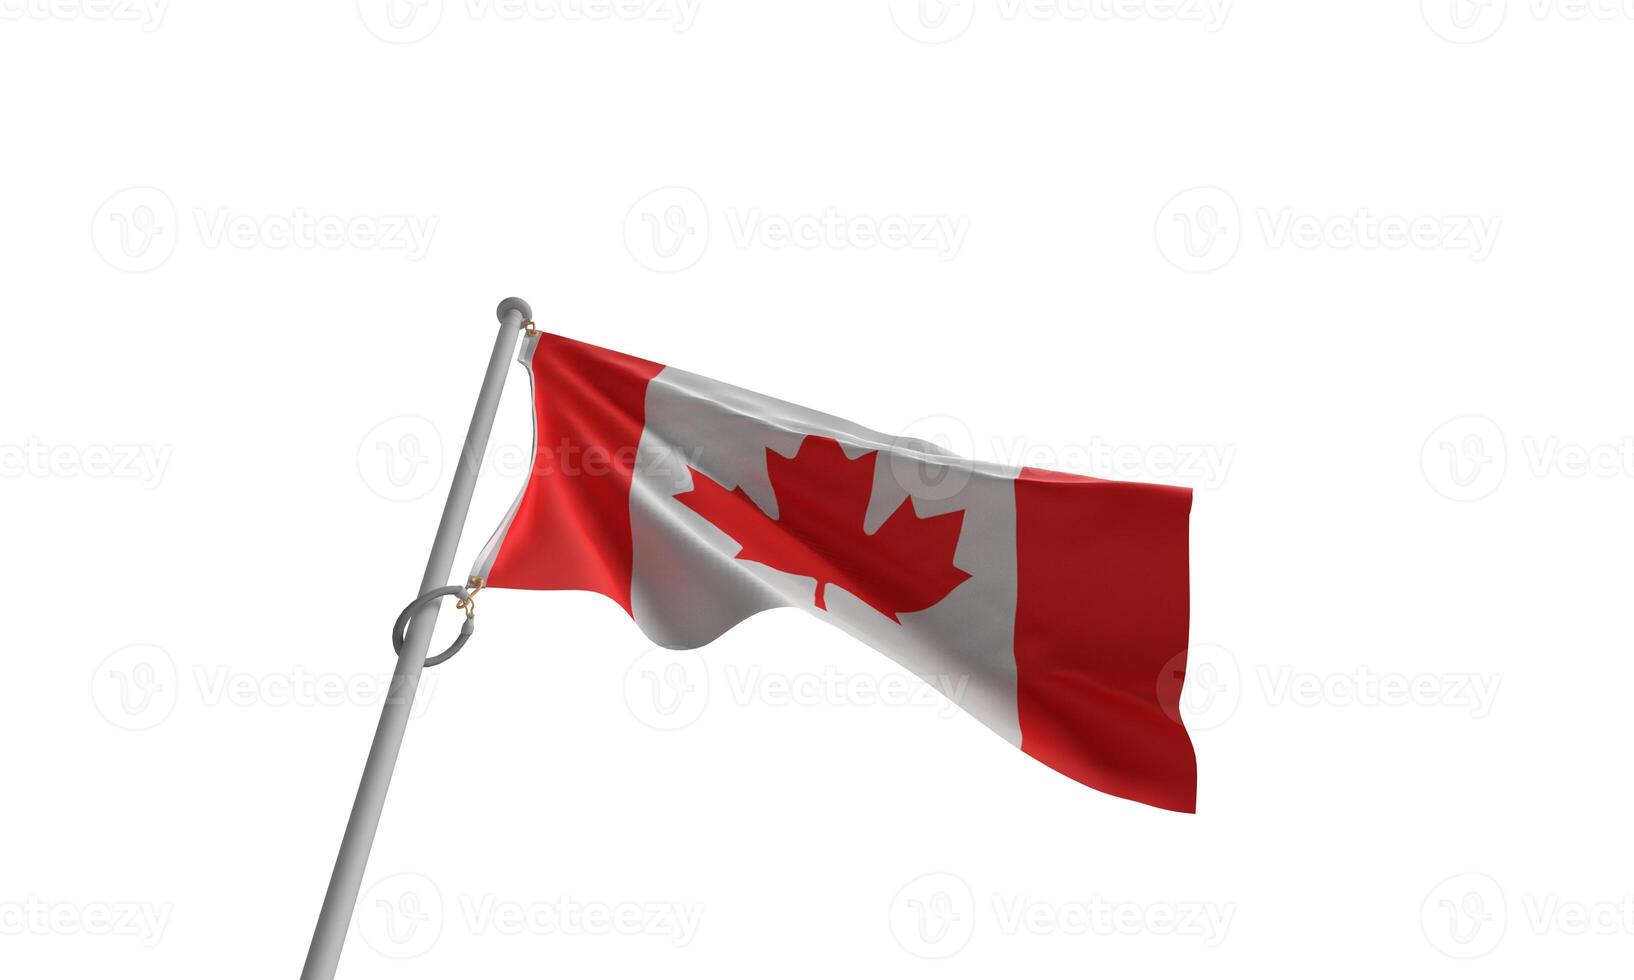 Kanada Flagge Ahorn Blatt Baum rot Weiß Farbe oben Aussicht Urlaub Feier National Patriotismus Freiheit Unabhängigkeit Design Banner kanadische Flagge Reise 1 frist st Juli Monat Ahorn Regierung Kultur Kunst foto